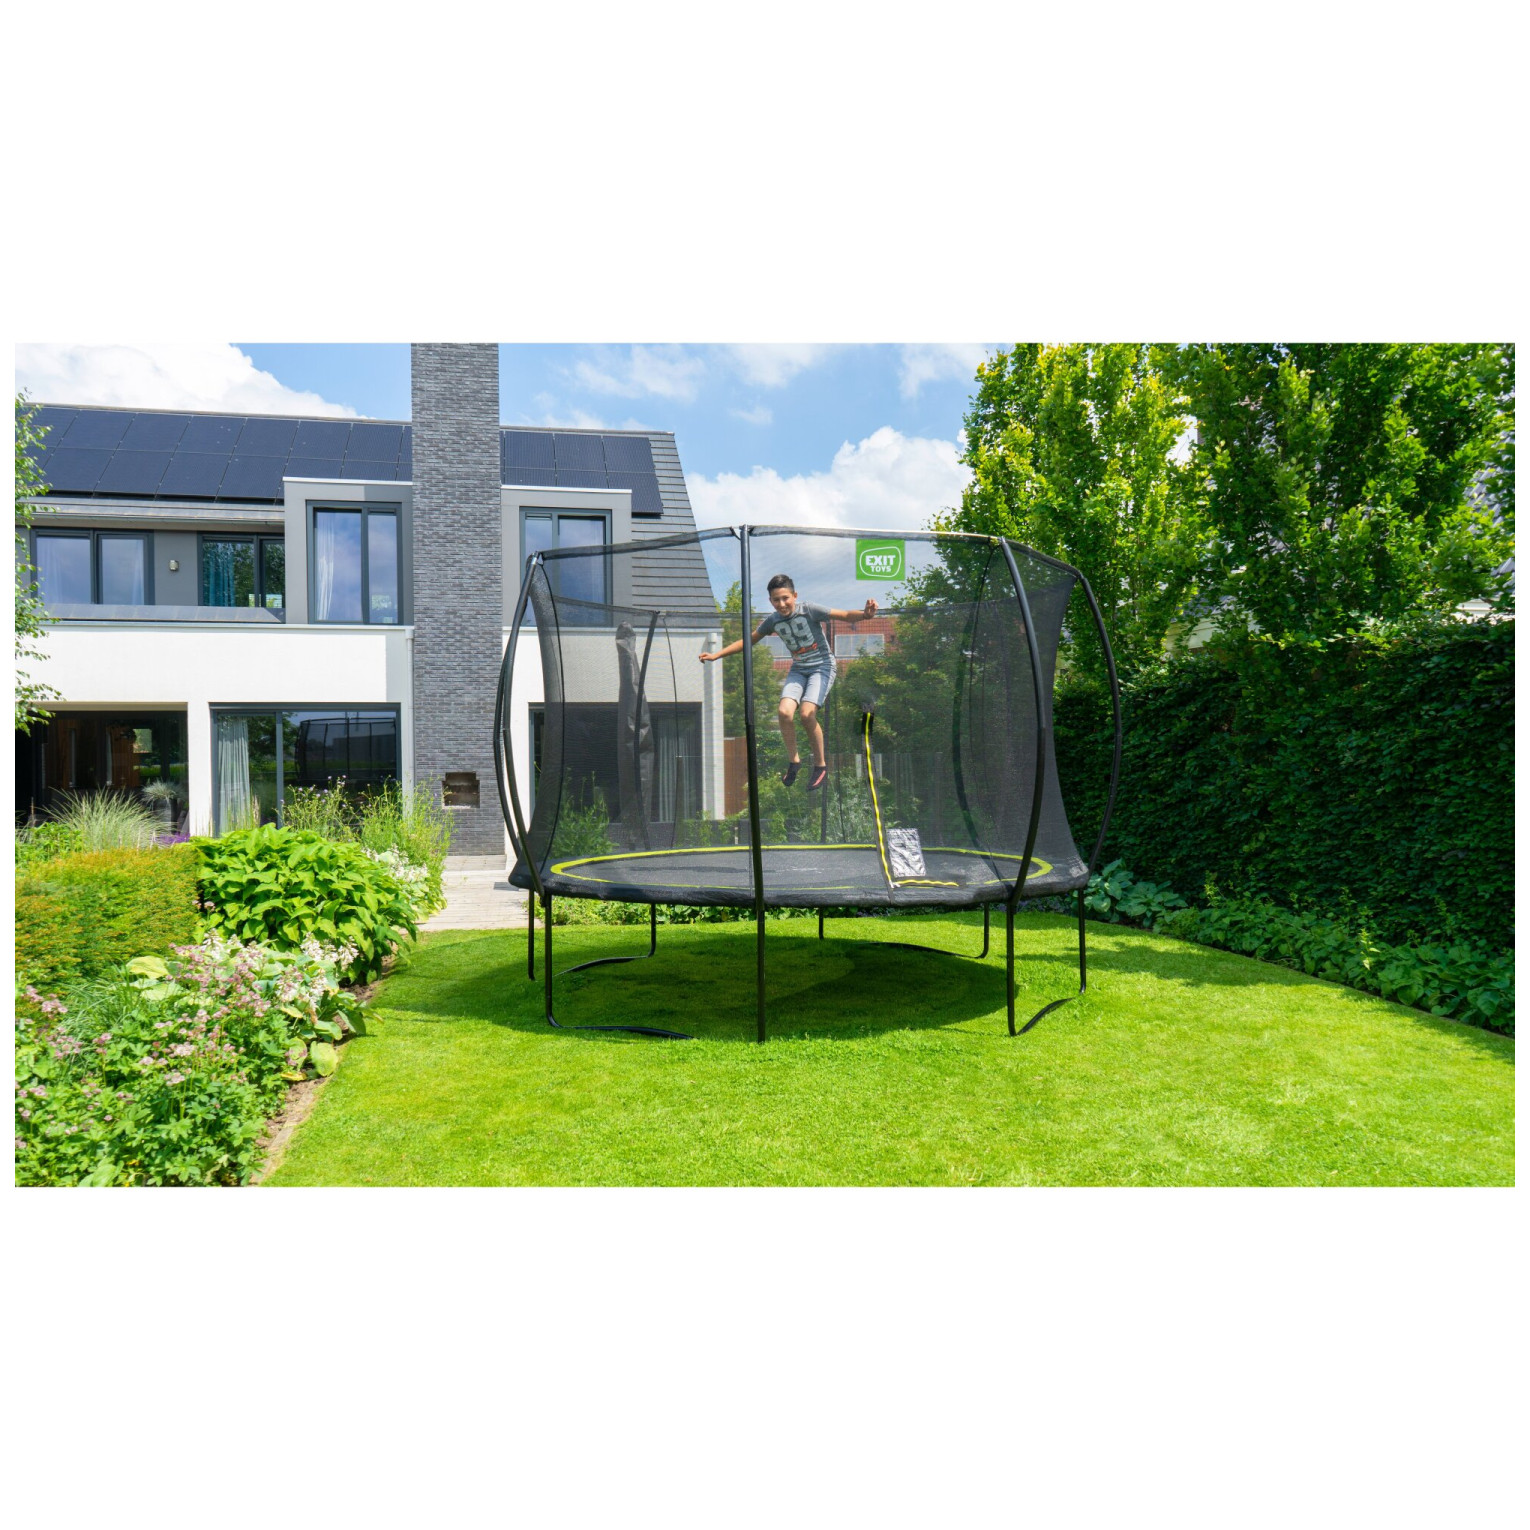 EXIT Silhouette trampoline ø244cm - zwart